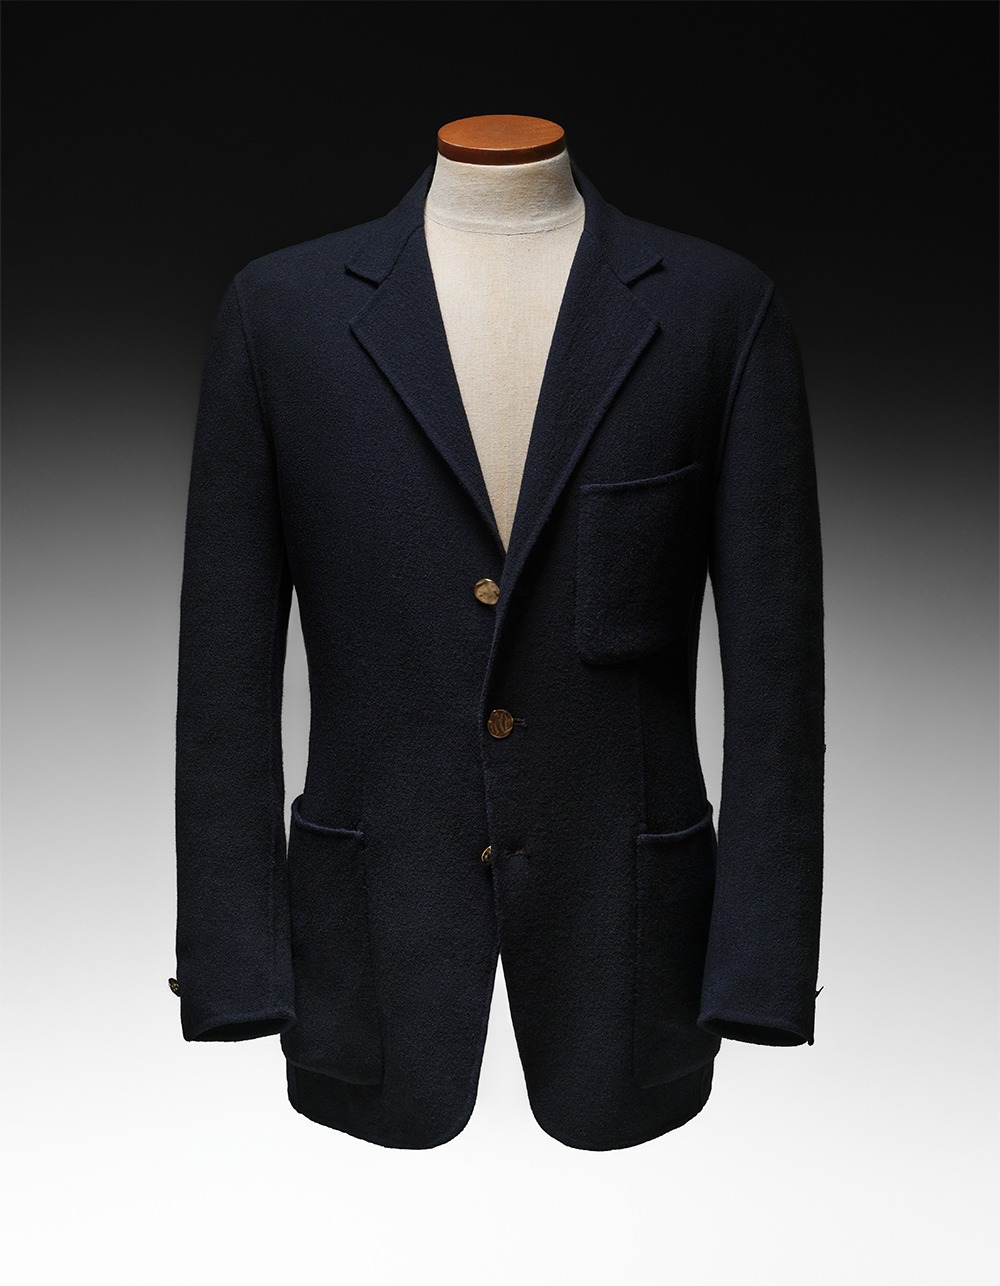 Mono jacket(indaco)